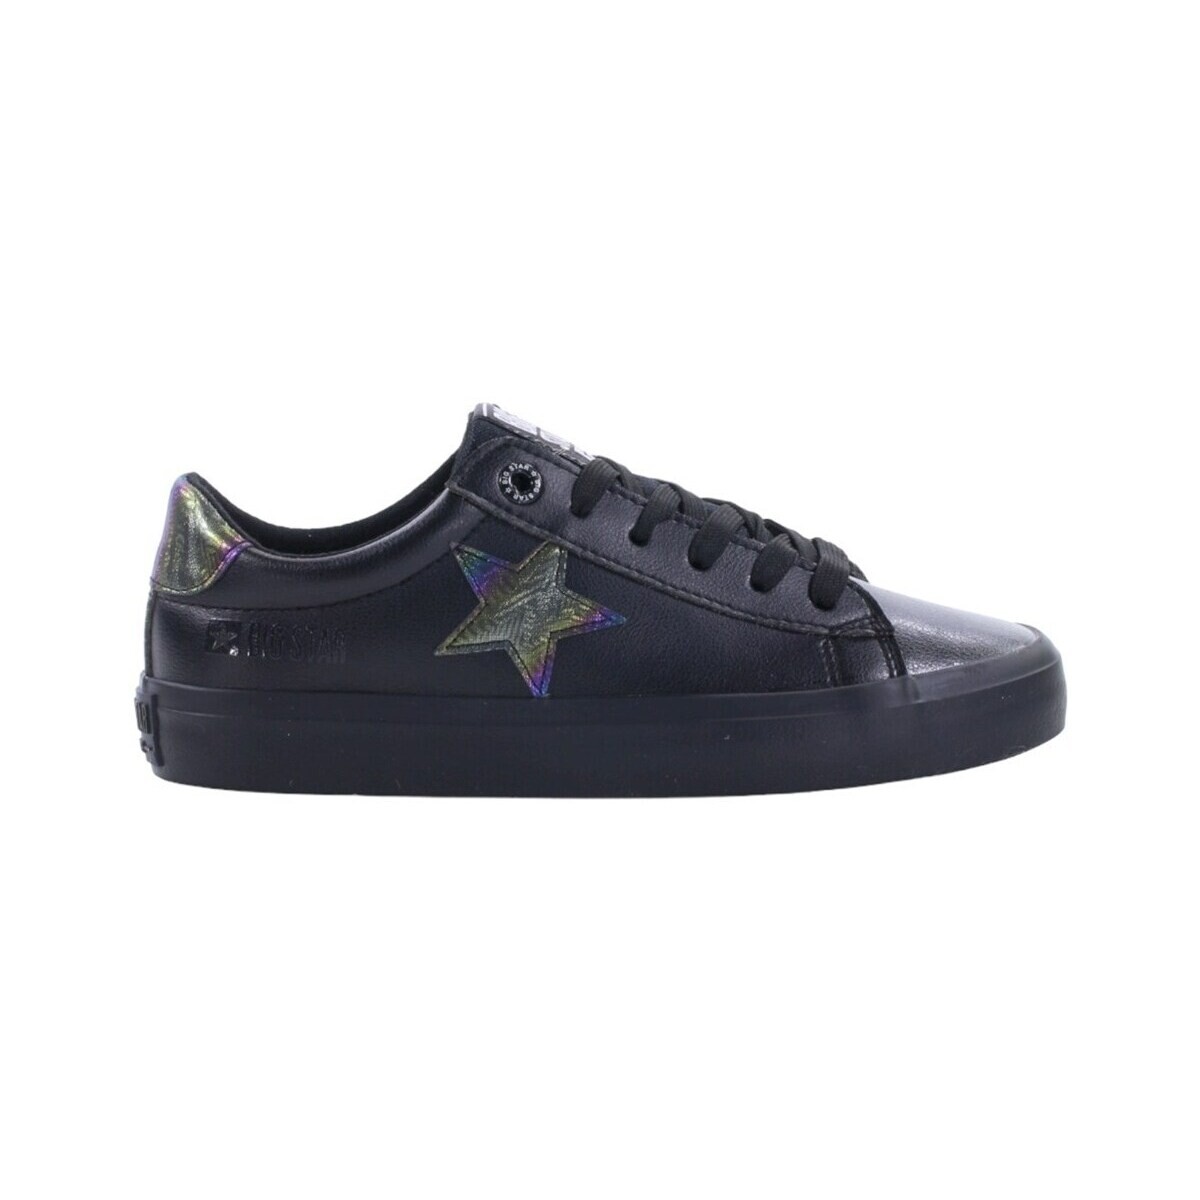 Schuhe Damen Sneaker Low Big Star JJ274243 Schwarz